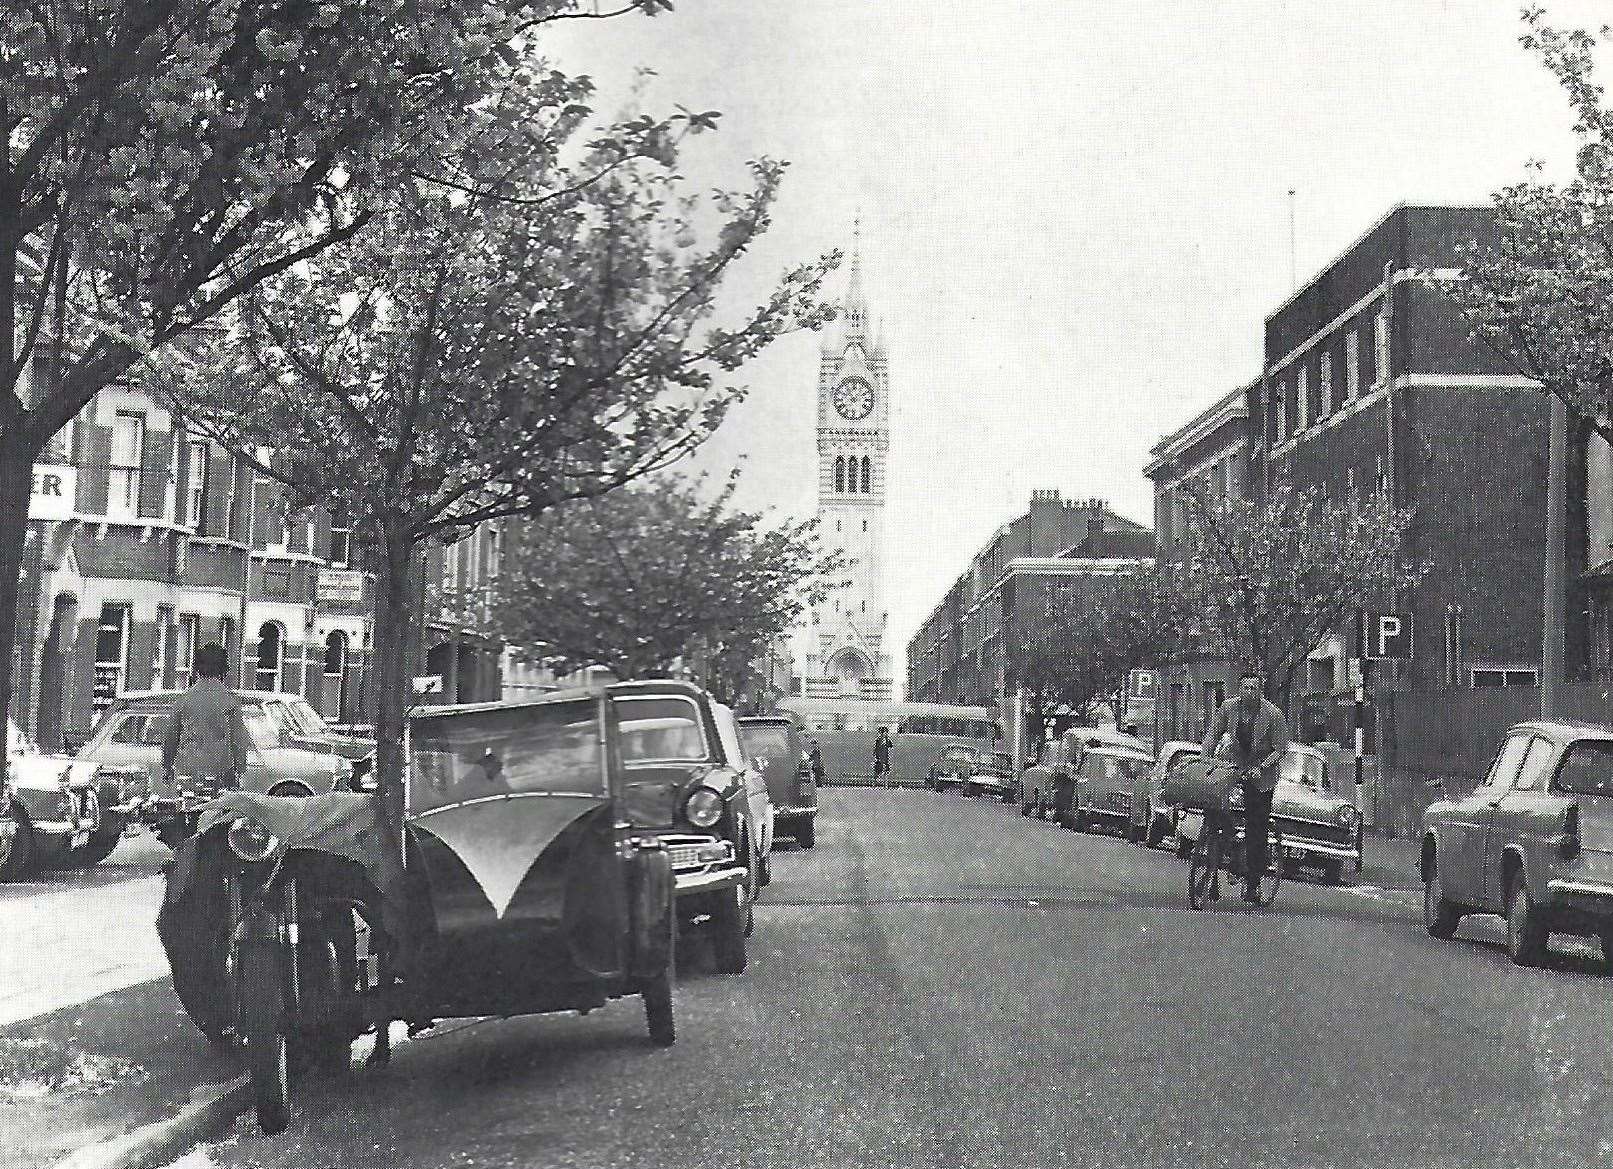 Gravesend in 1966